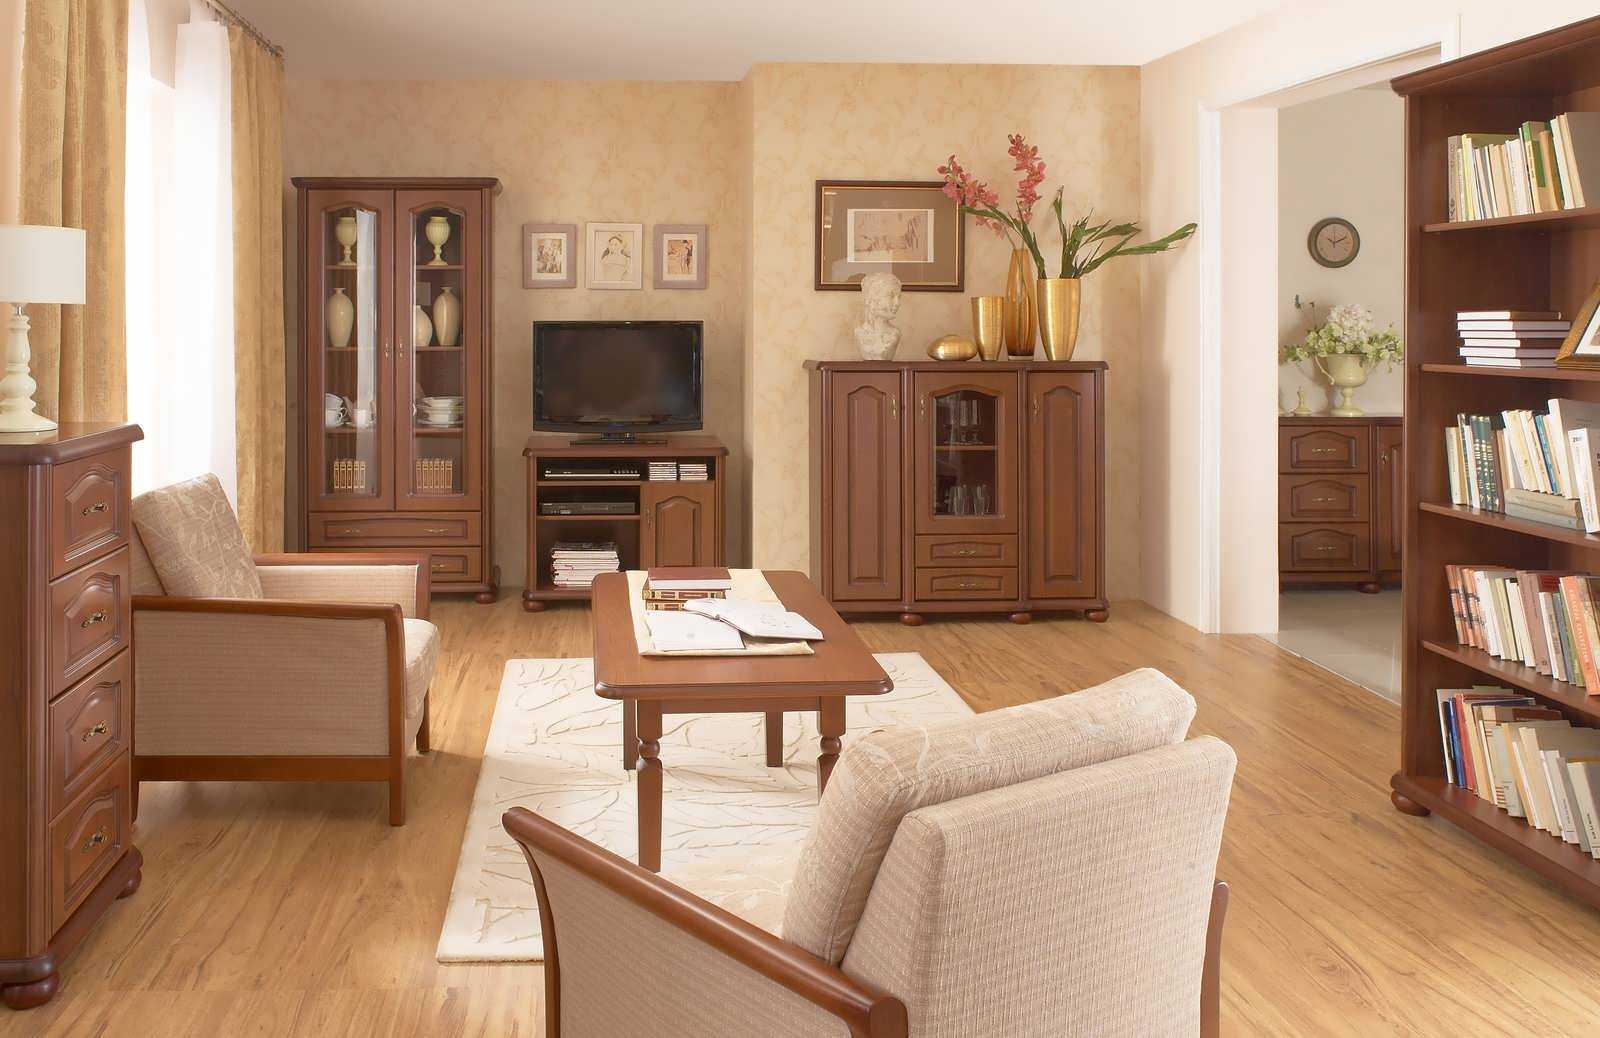 Мебель орех в интерьере: для спальни, кухни, гостиной и кабинета